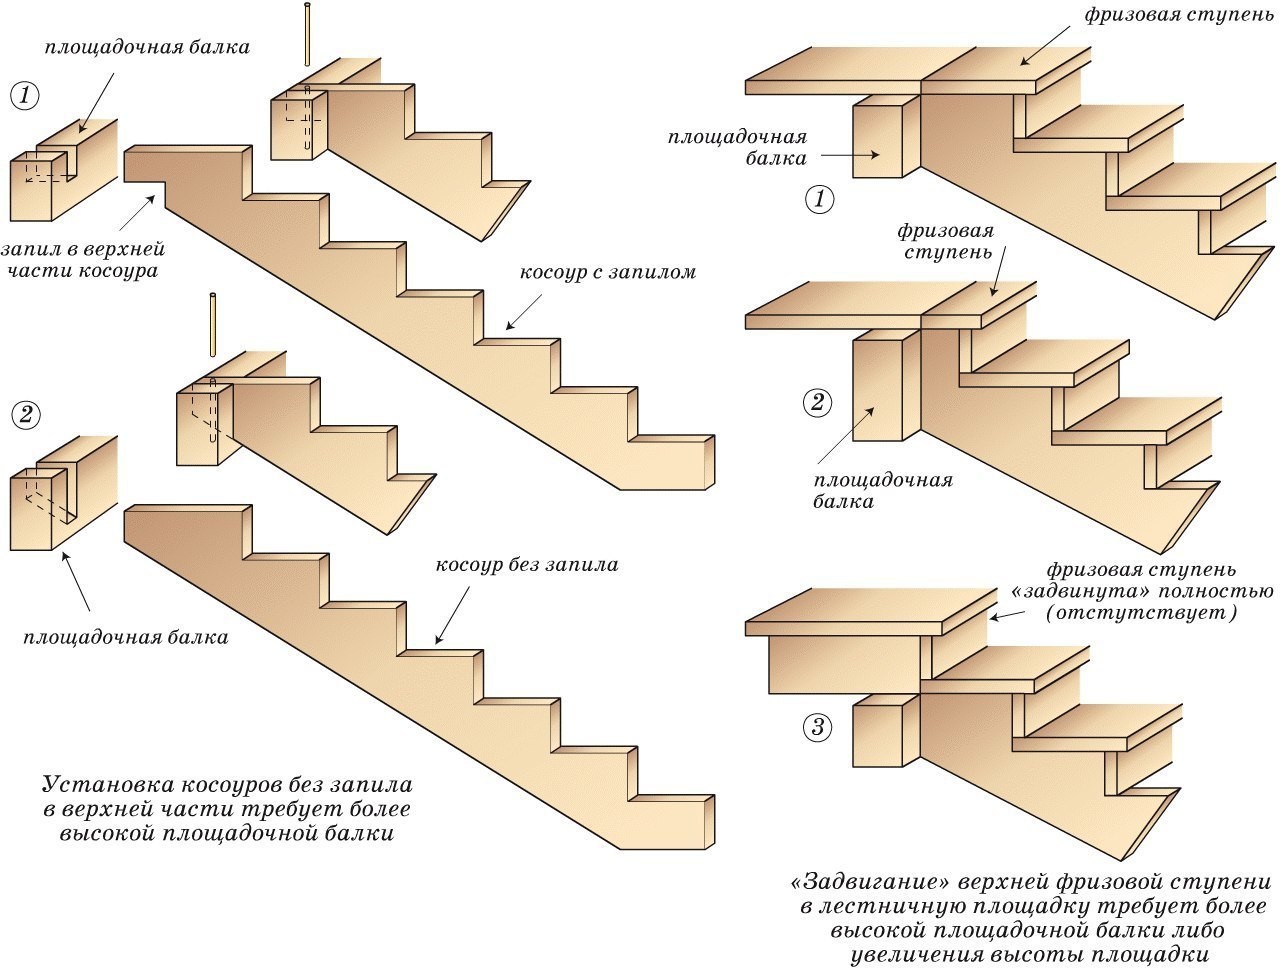 Косоуры лестничных маршей. Крепление косоура к ступени чертеж. Что такое косоур и тетива лестницы. Чертежи деревянной лестницы на косоурах на второй этаж. Схема раскроя тетивы для лестницы.